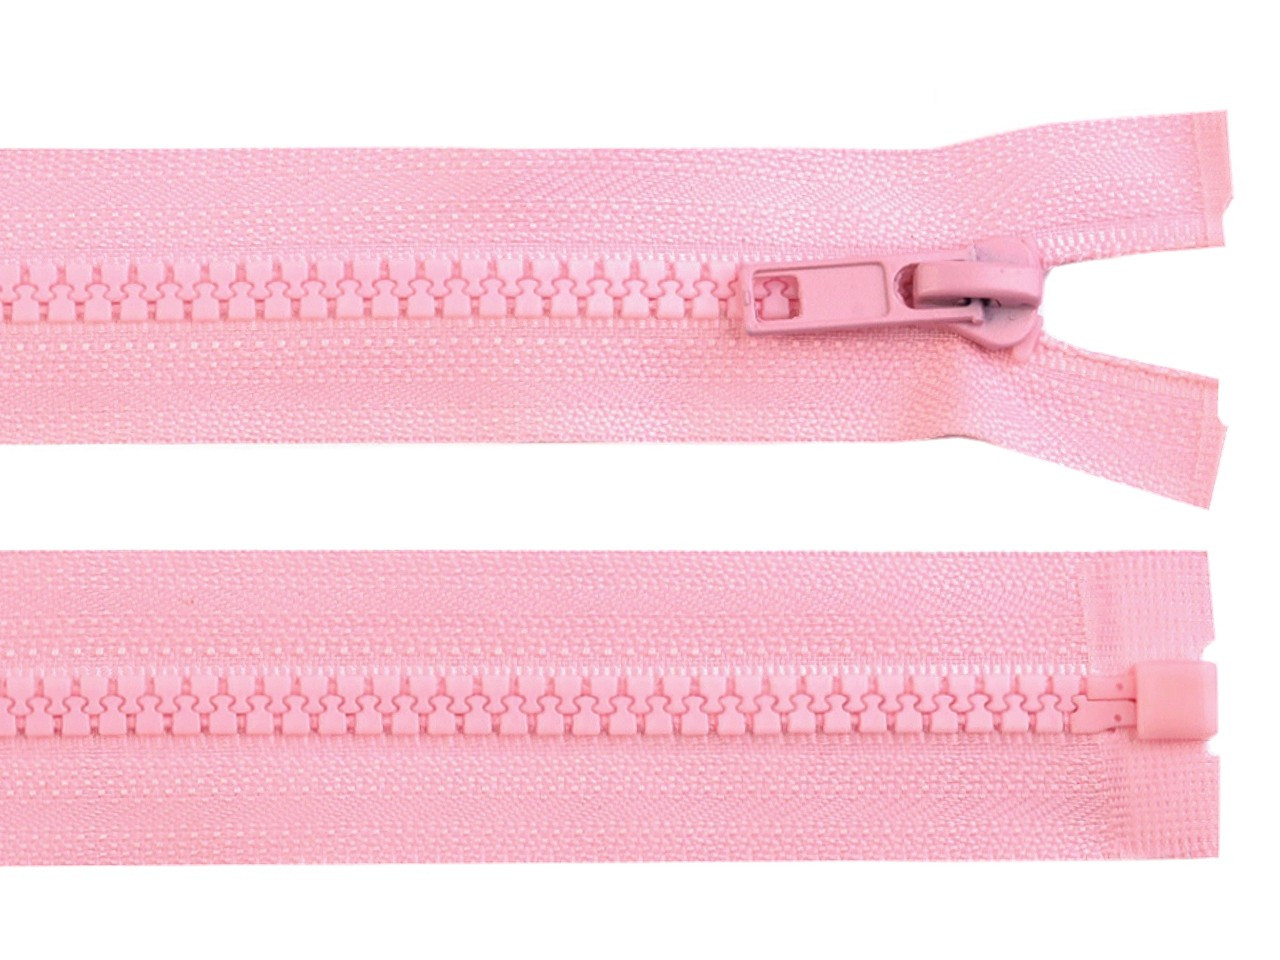 Kostěný zip No 5 délka 60 cm bundový, barva 134 růžová dětská světlá